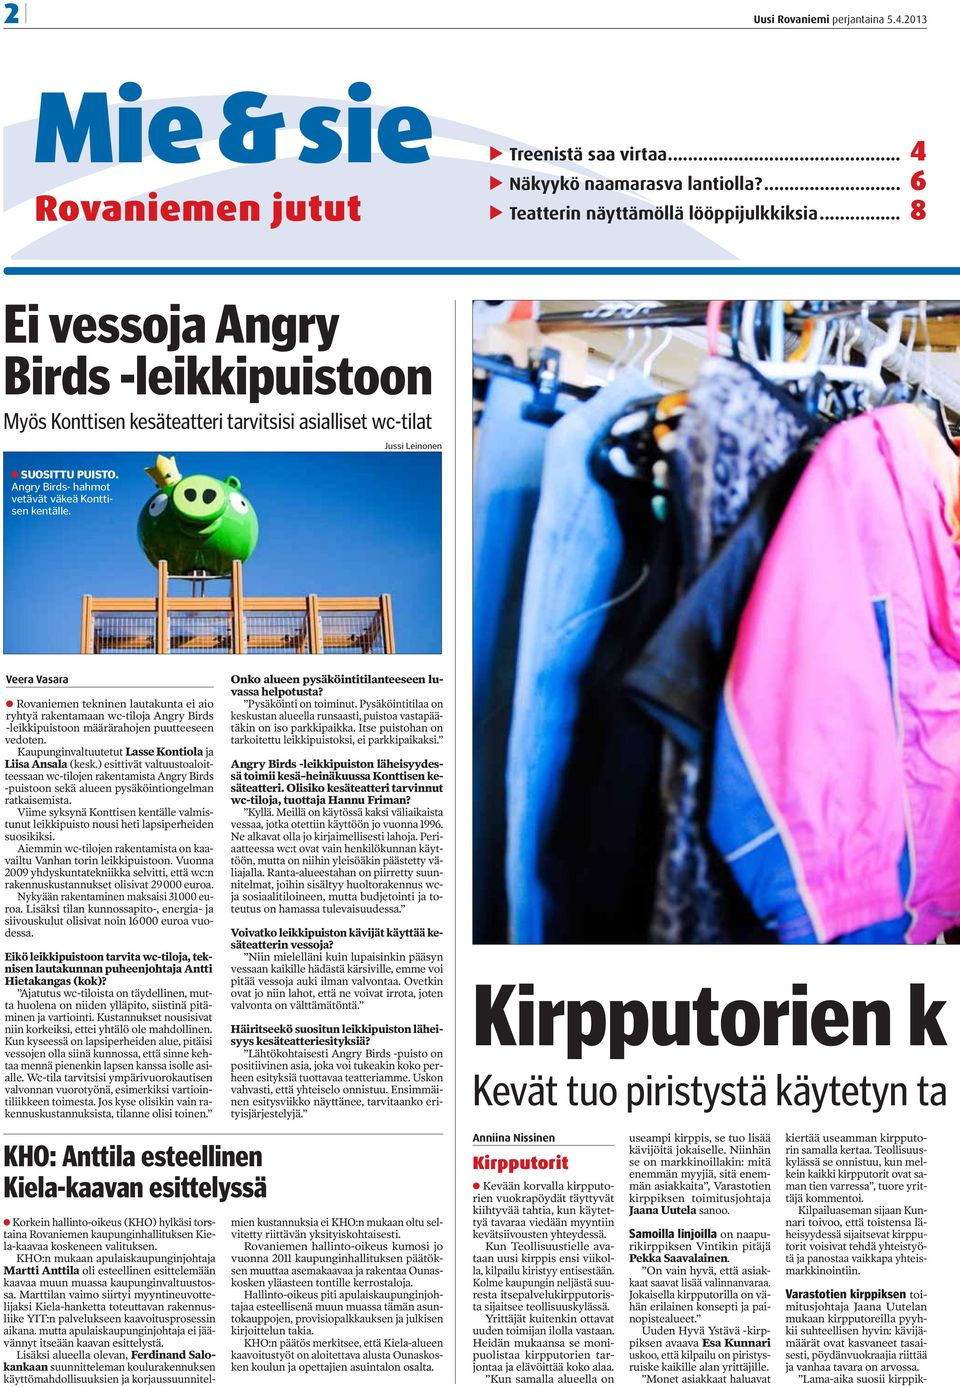 Jussi Leinonen Veera Vasara Rovaniemen tekninen lautakunta ei aio ryhtyä rakentamaan wc-tiloja Angry Birds -leikkipuistoon määrärahojen puutteeseen vedoten.